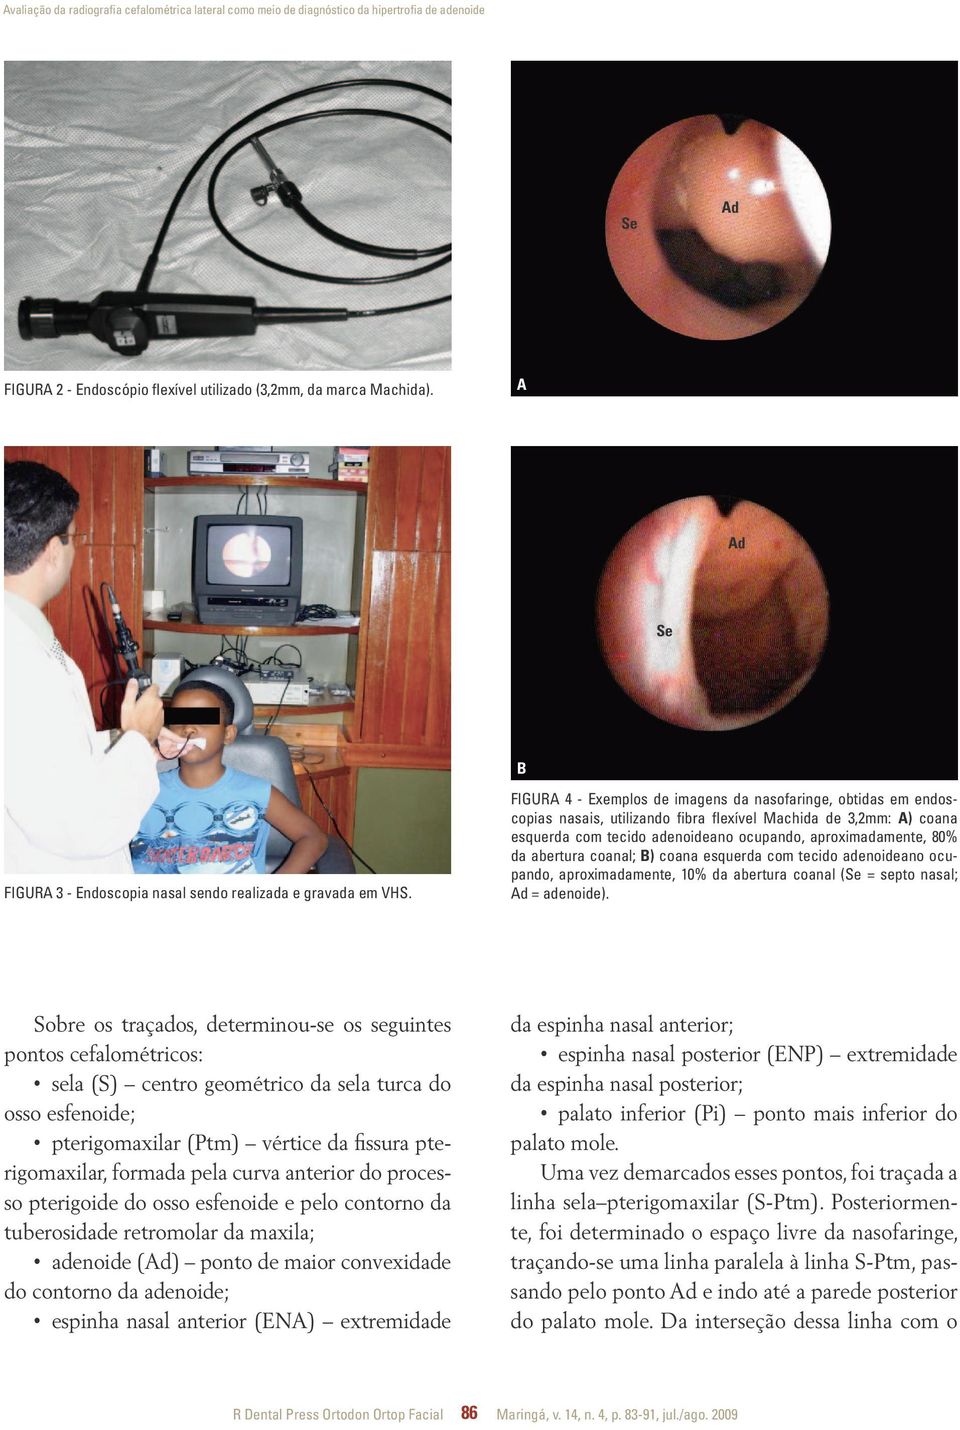 Figura 4 - Exemplos de imagens da nasofaringe, obtidas em endoscopias nasais, utilizando fibra flexível Machida de 3,2mm: A) coana esquerda com tecido adenoideano ocupando, aproximadamente, 80% da